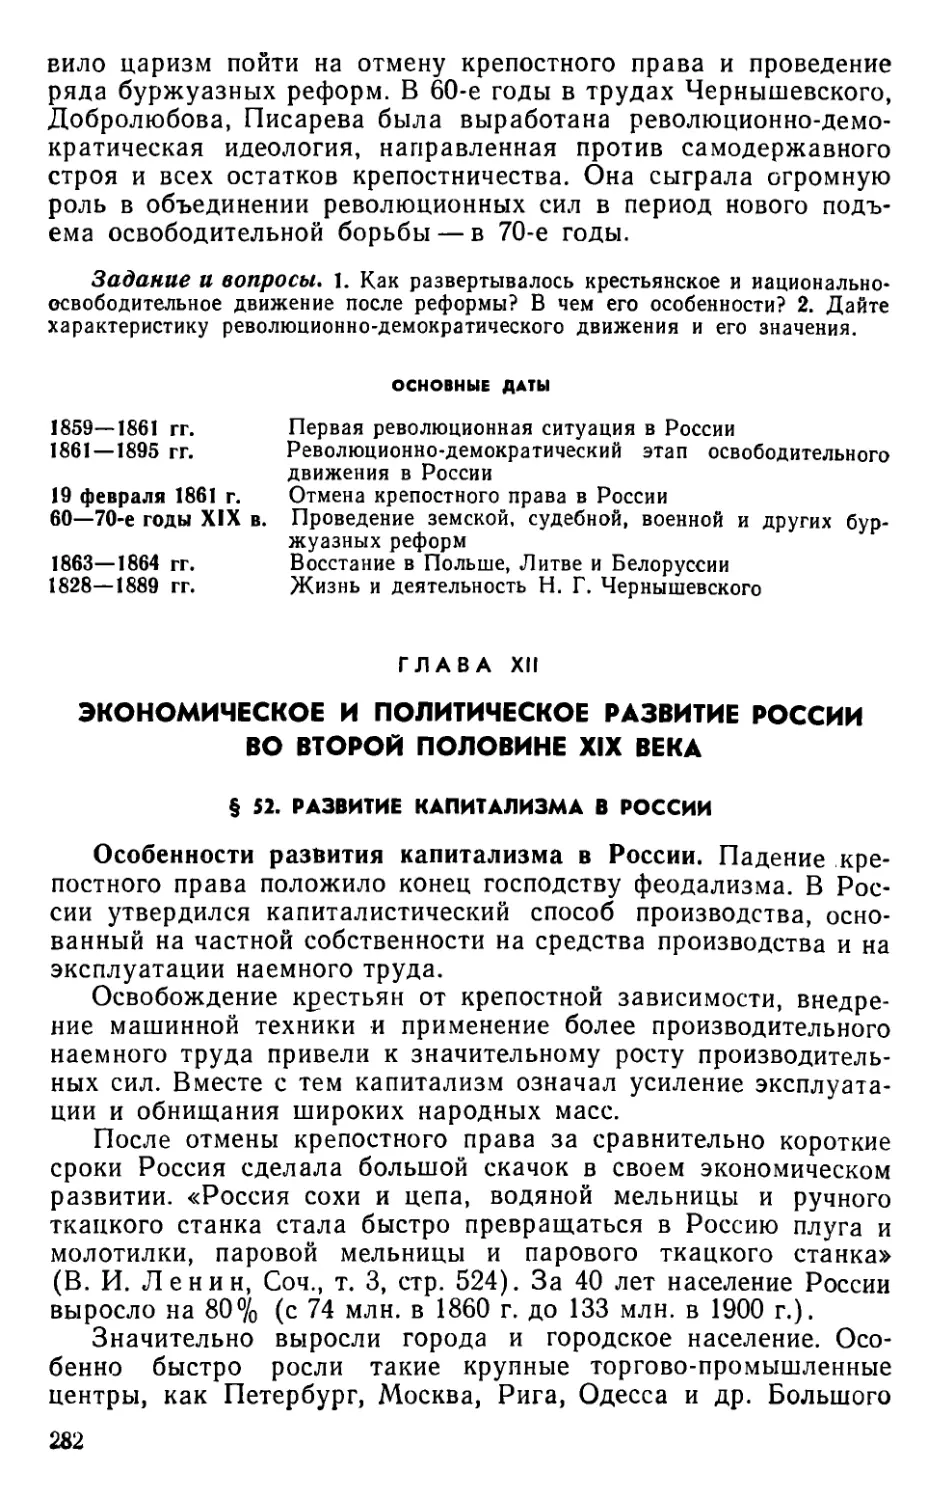 Глава XII. Экономическое и политическое развитие России во второй половине XIX века